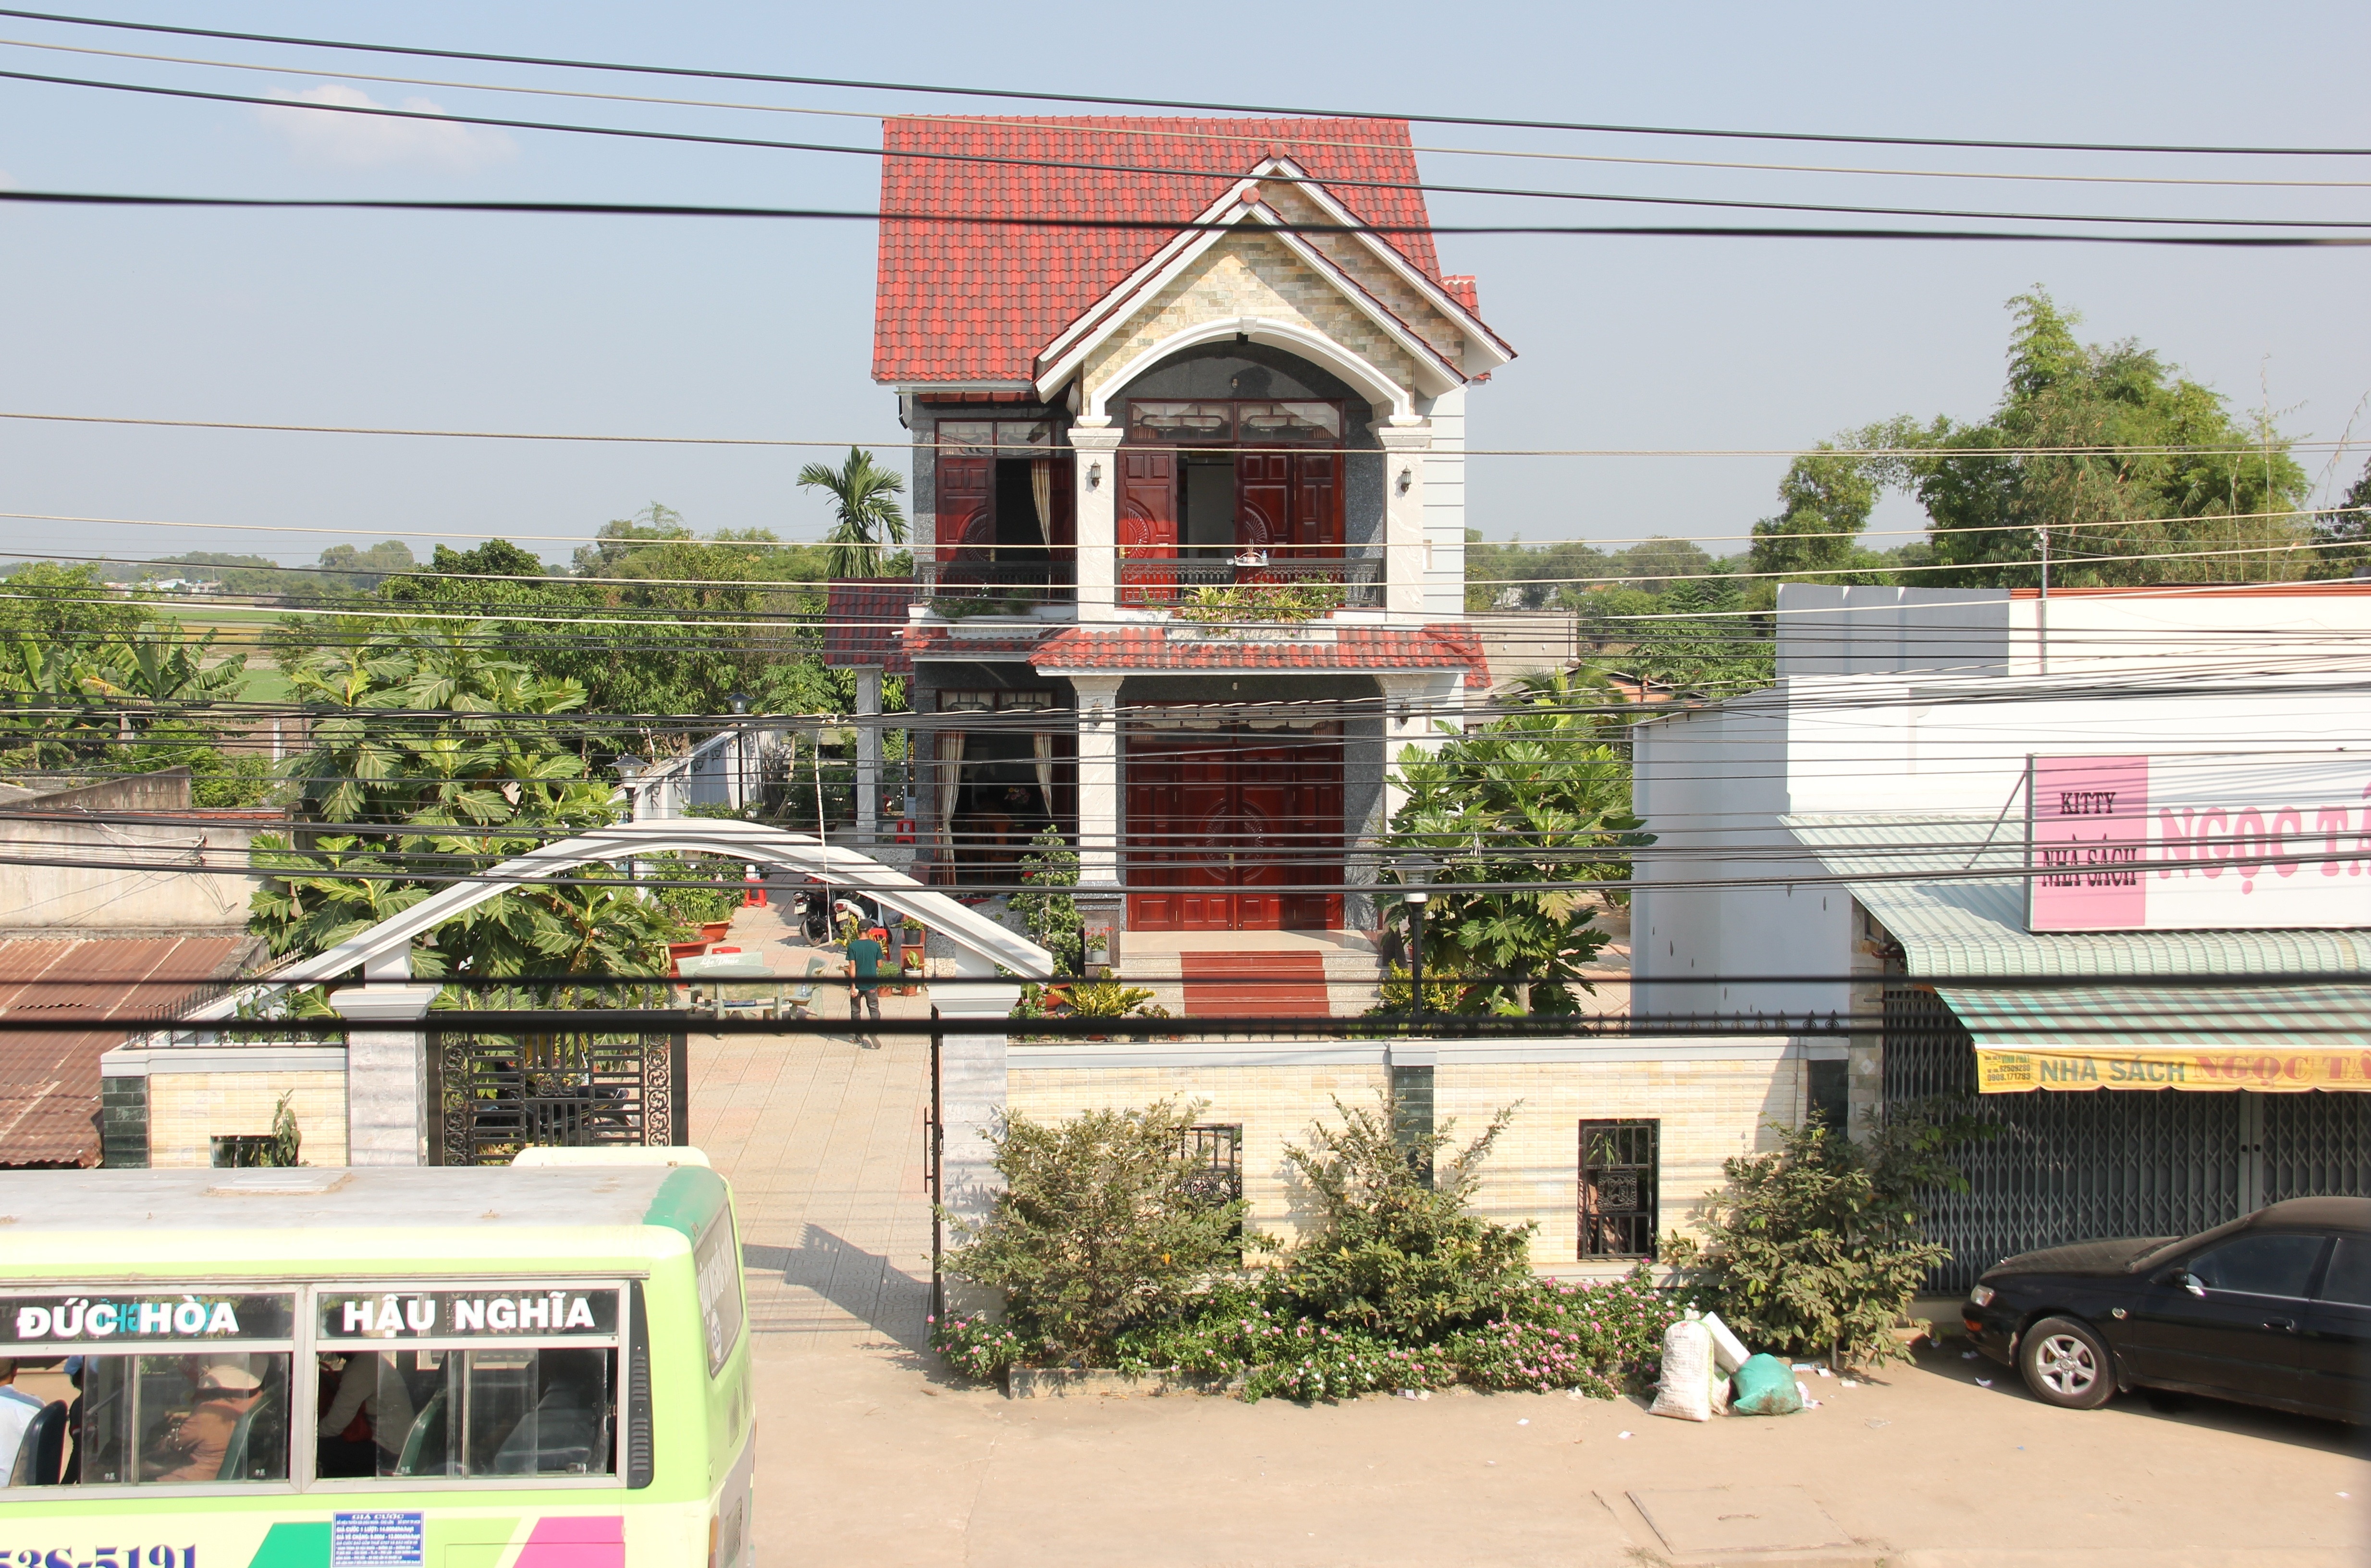 
Căn nhà của ông Nguyễn Văn Út, bí thư huyện uỷ Đức Hoà bị bọn đầu trộm đuôi cướp đột nhập dùng súng tấn công.
